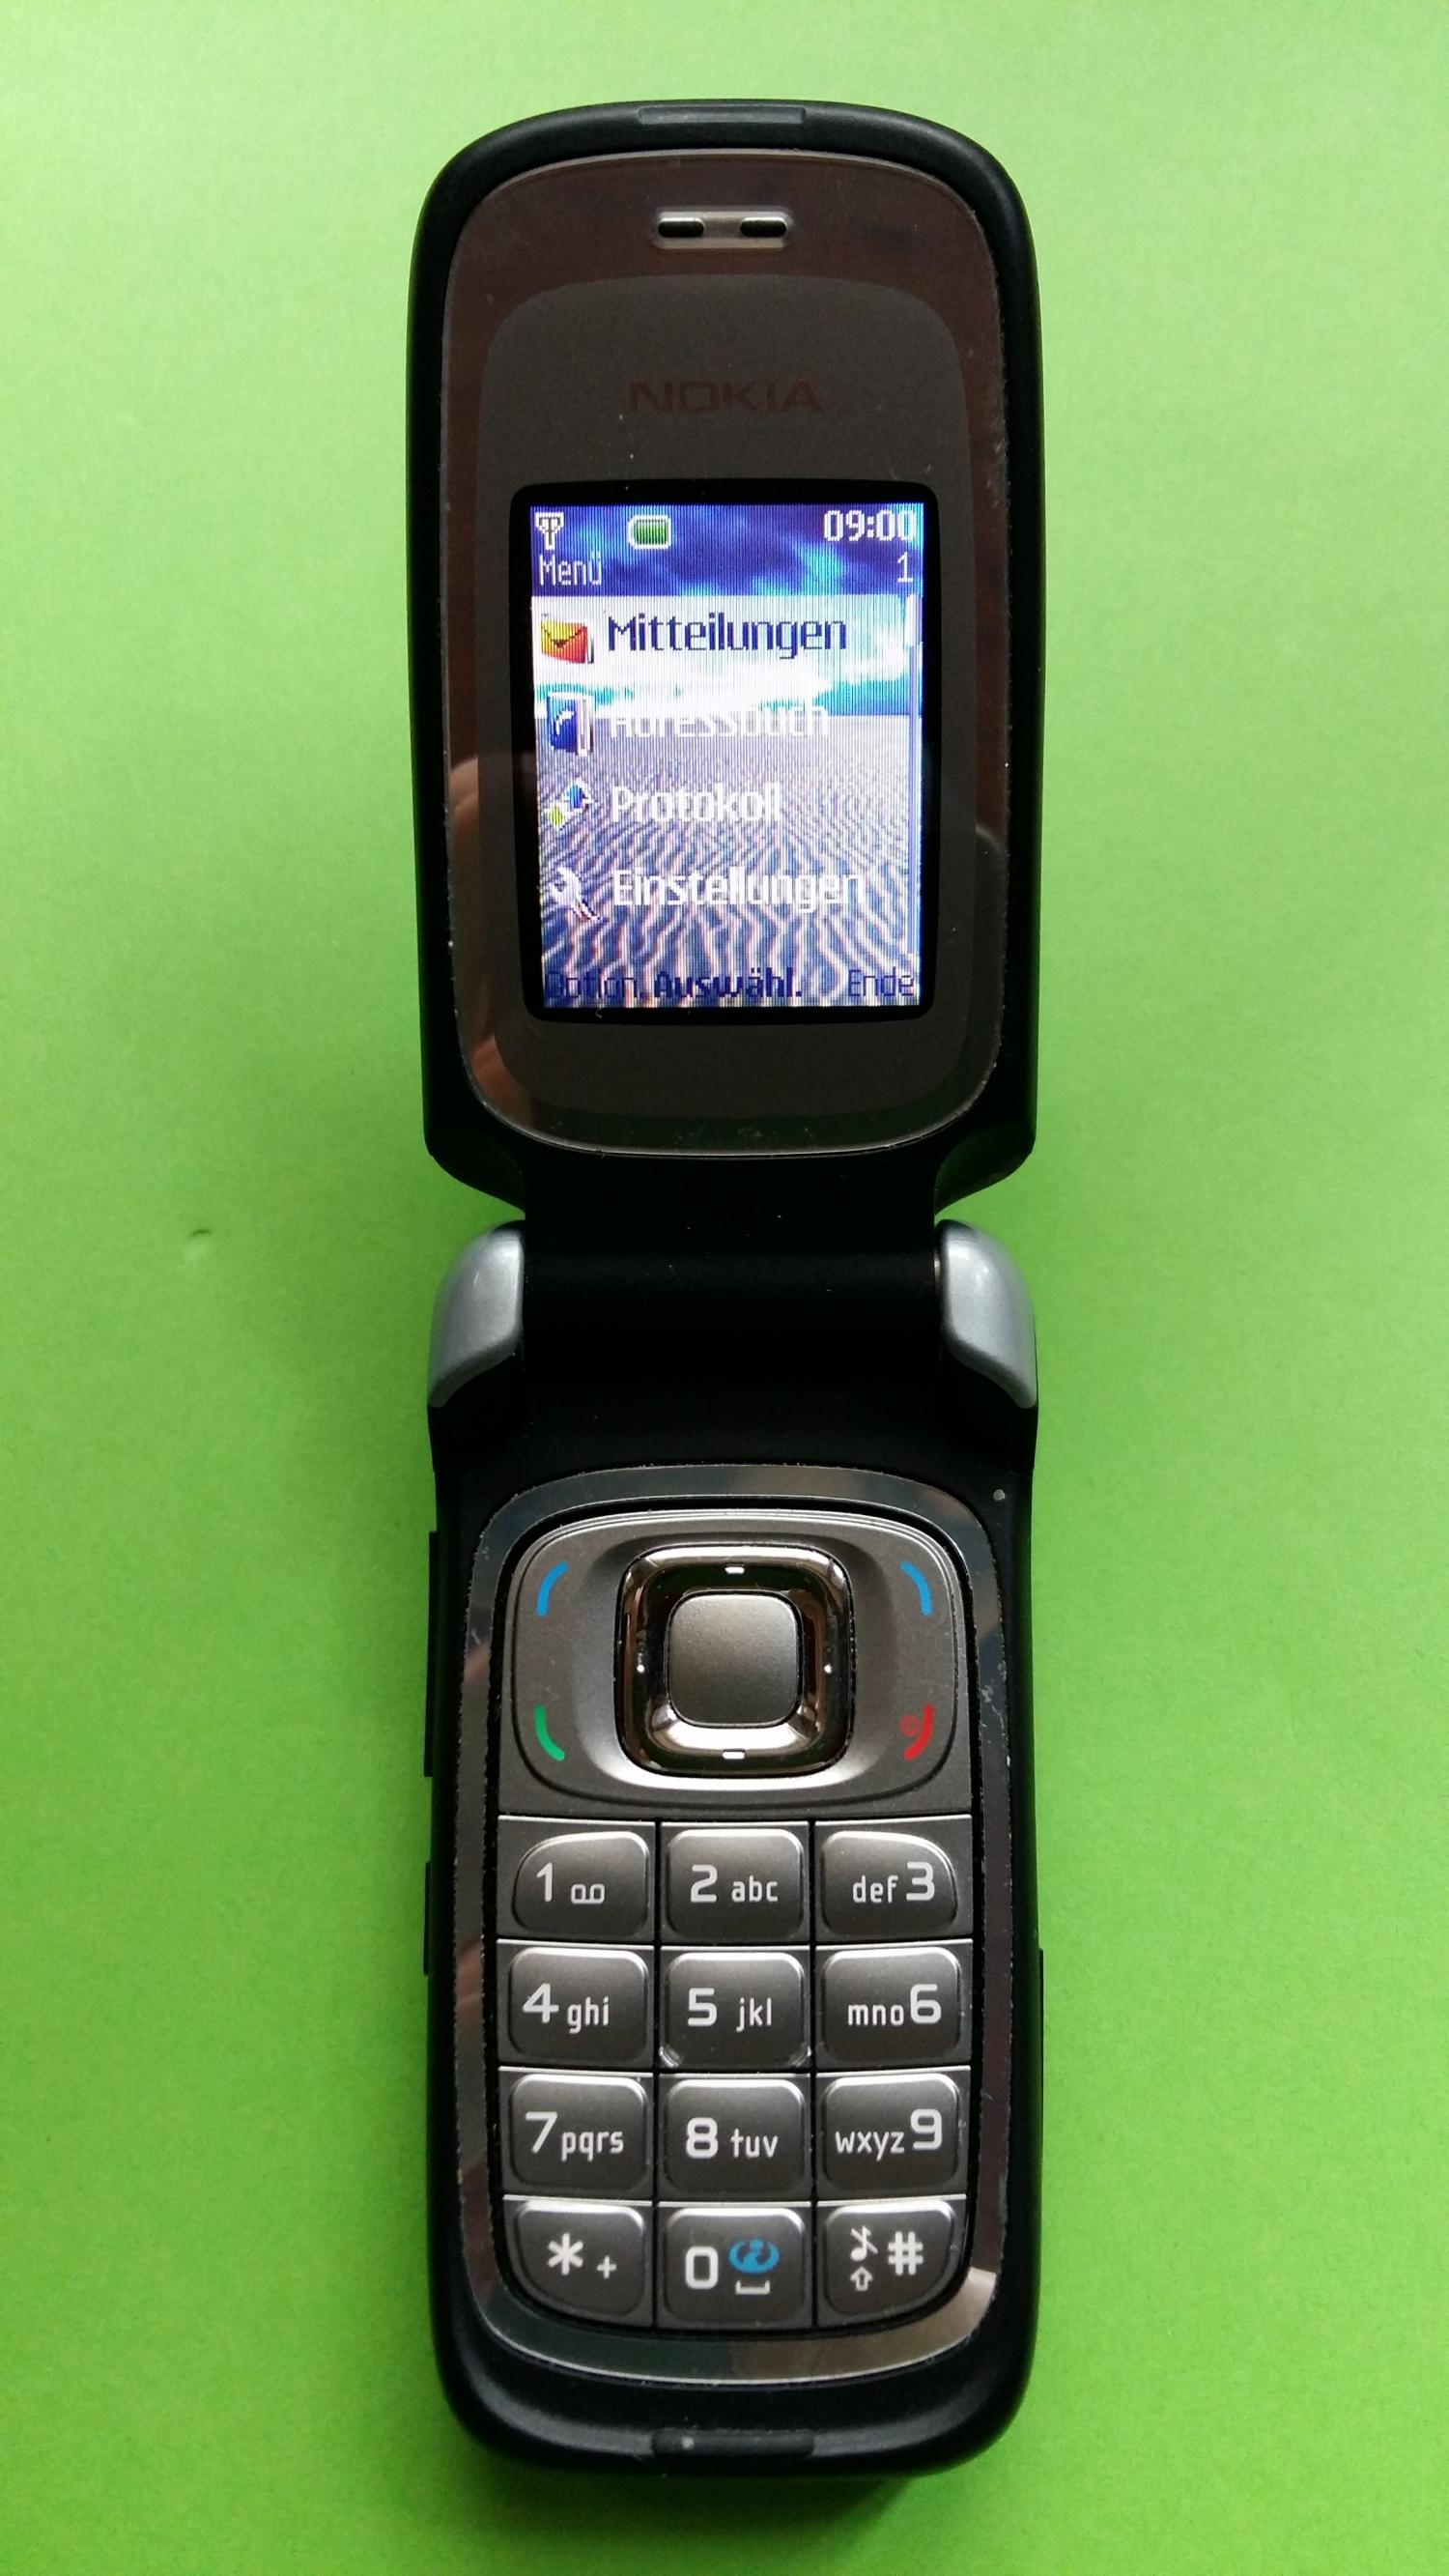 image-7316032-Nokia 6085 (6)2.jpg